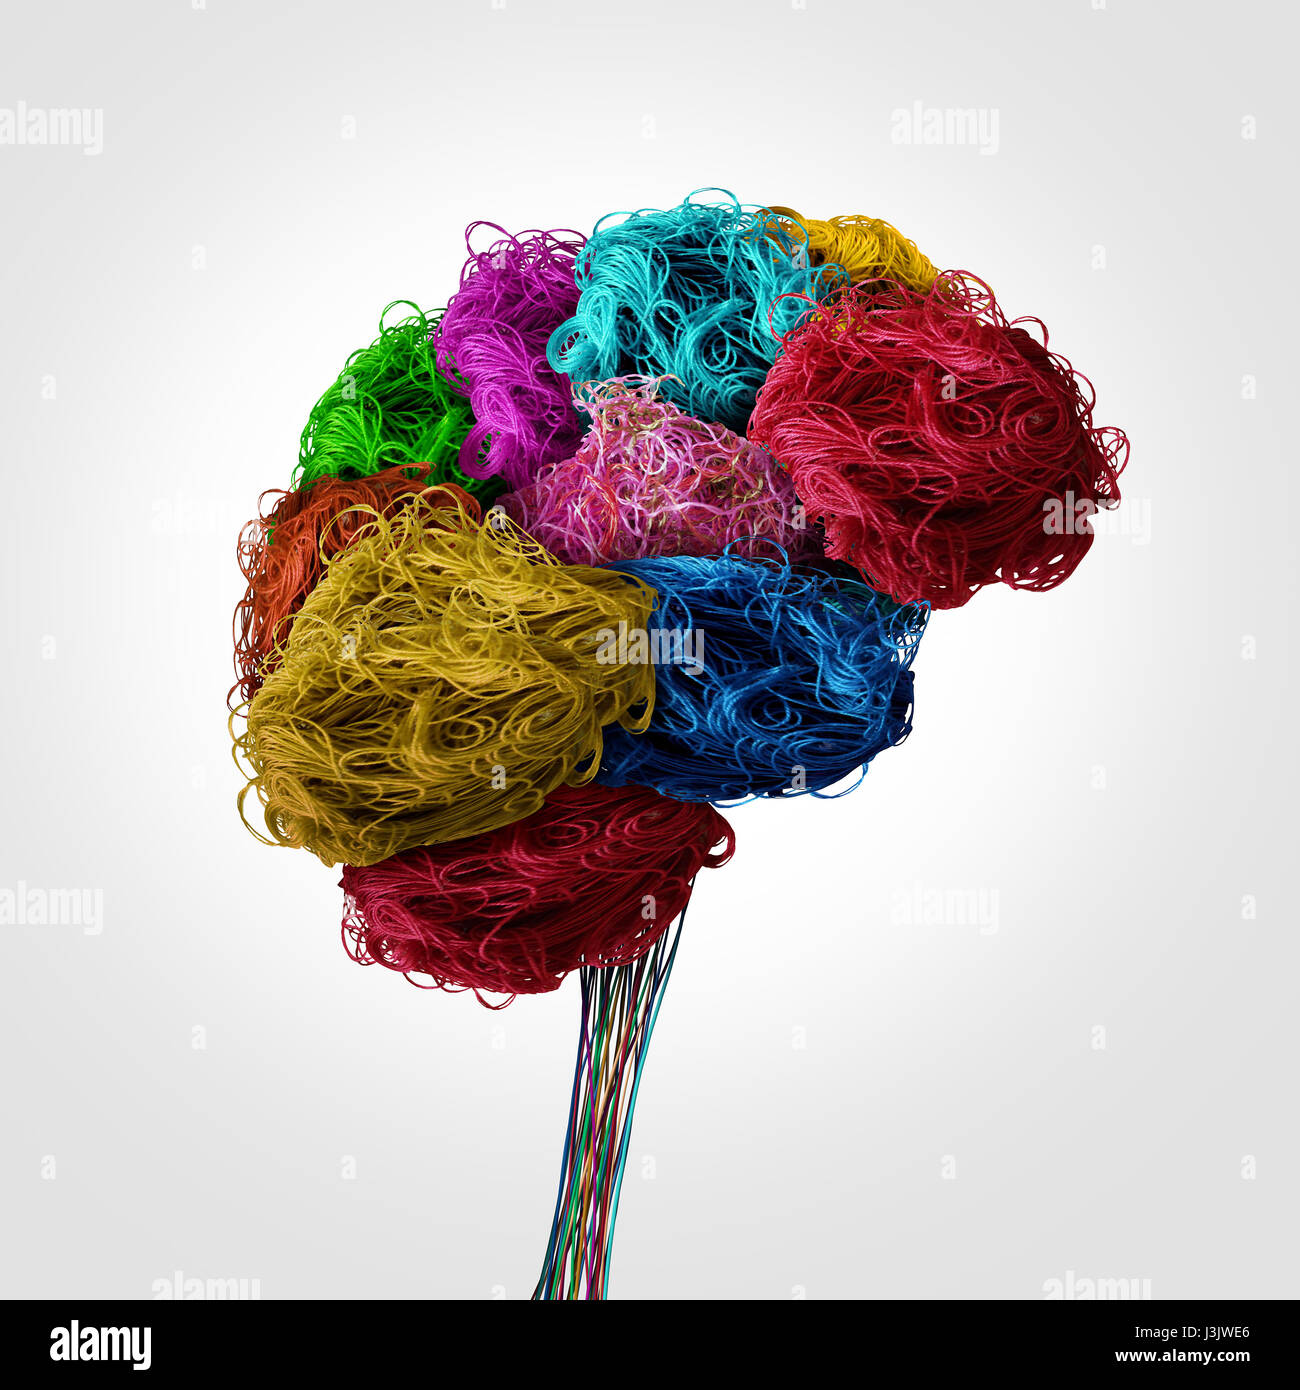 Tangled cerveau humain concept comme un organe de la pensée faite de fil à coudre et le fil textile comme un symbole de la personnalité ou de la psychologie pour la neurologie. Banque D'Images